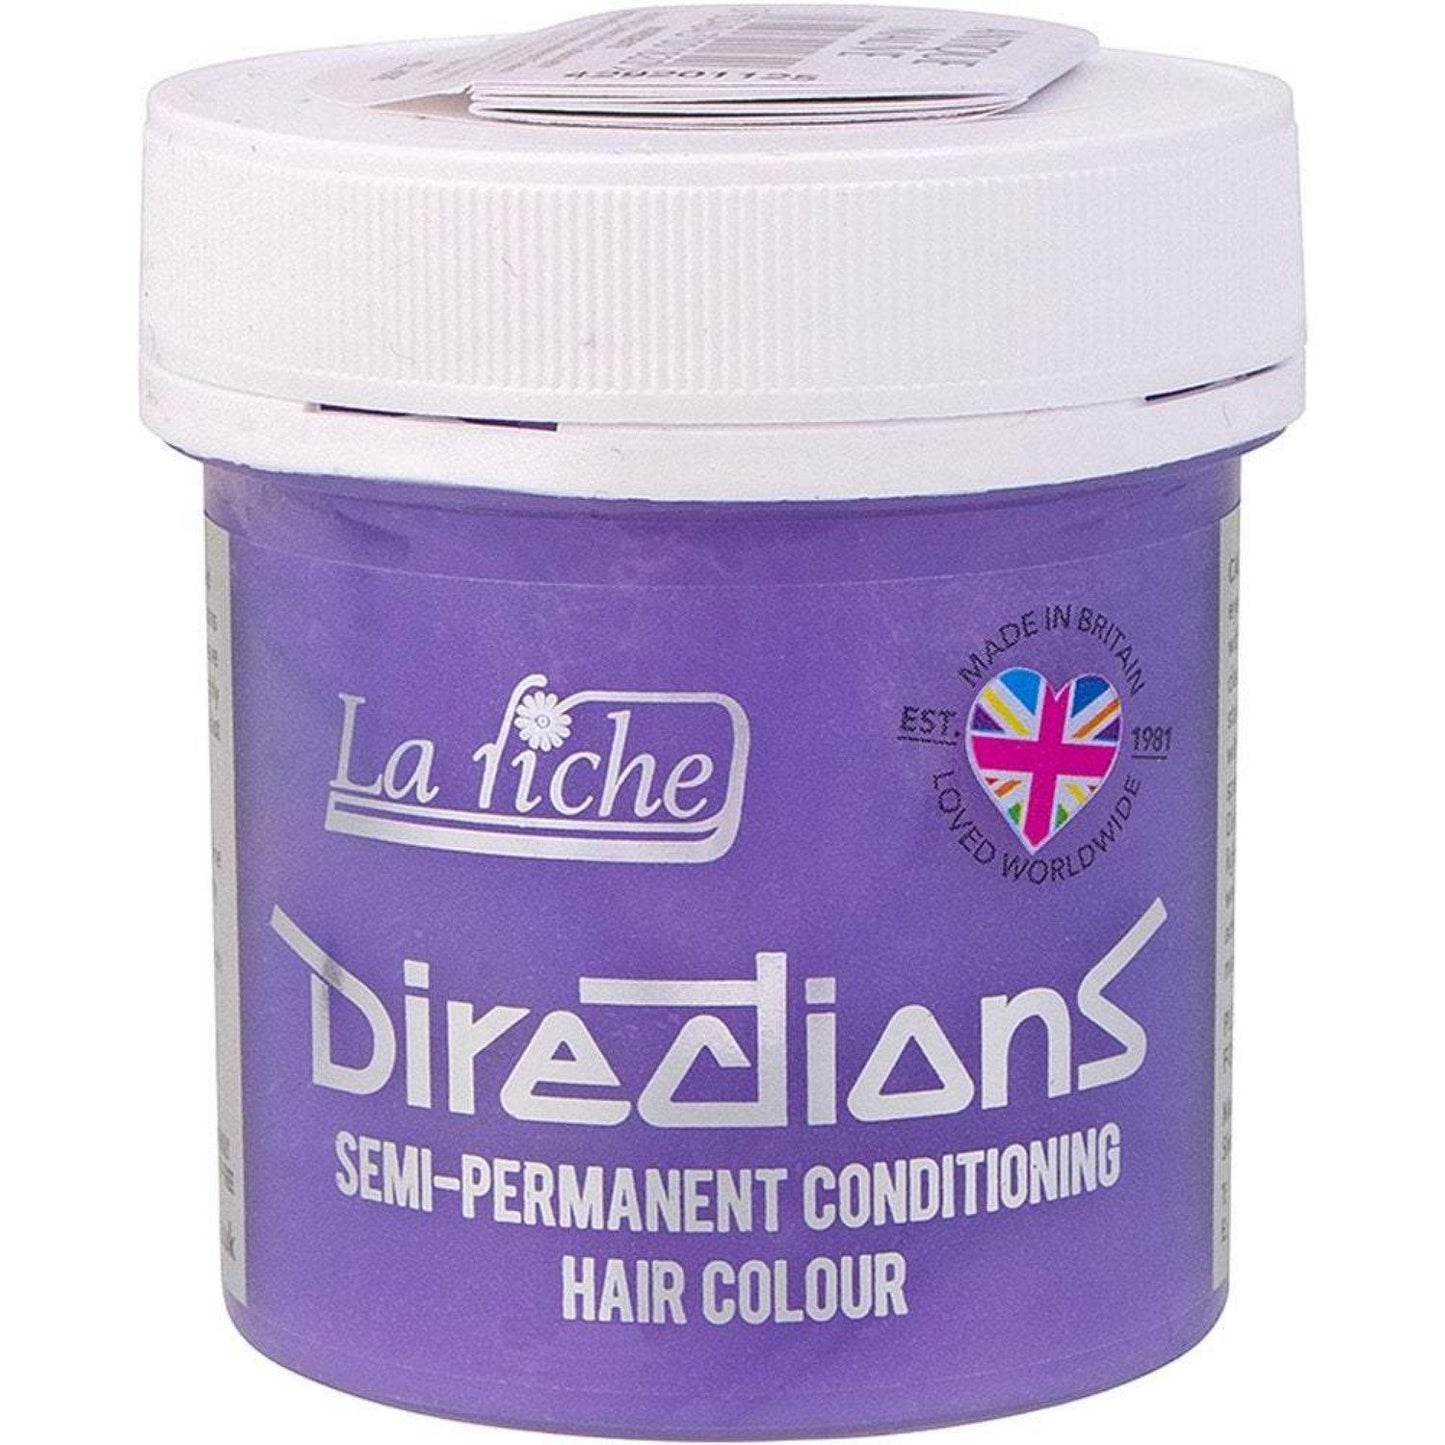 La Riche Directions Vegan Semi Permanent Hair Colour - 100ml - Antique Mauve (SHOP)